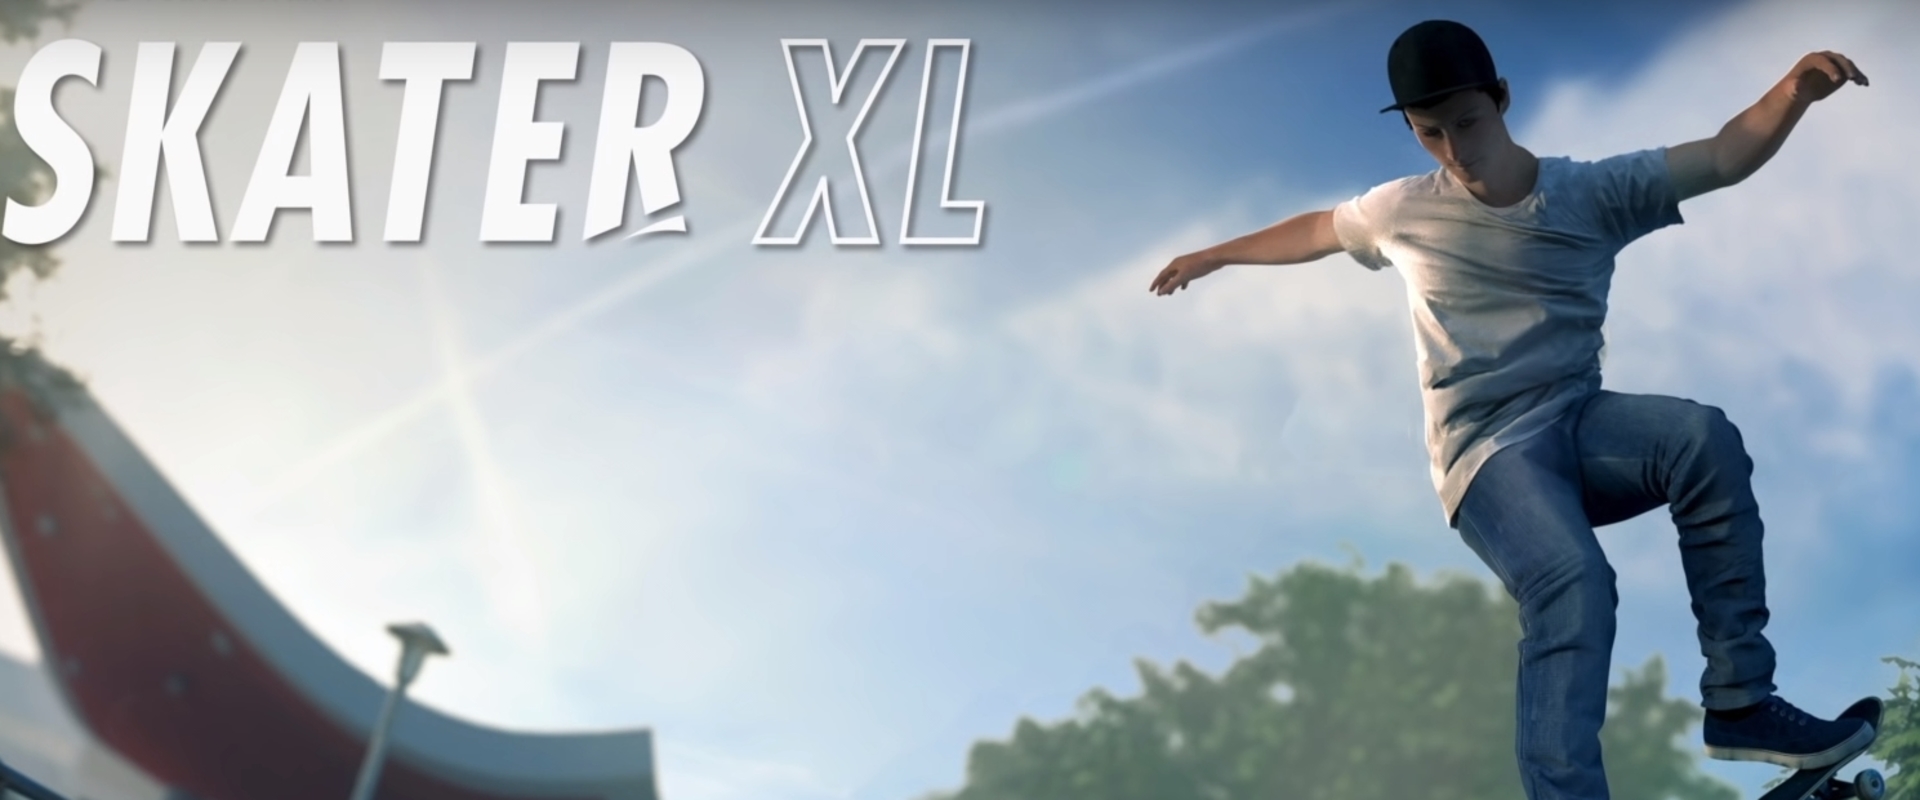 Skater XL: realisztikus gördeszkás játék érkezik hamarosan Steamre